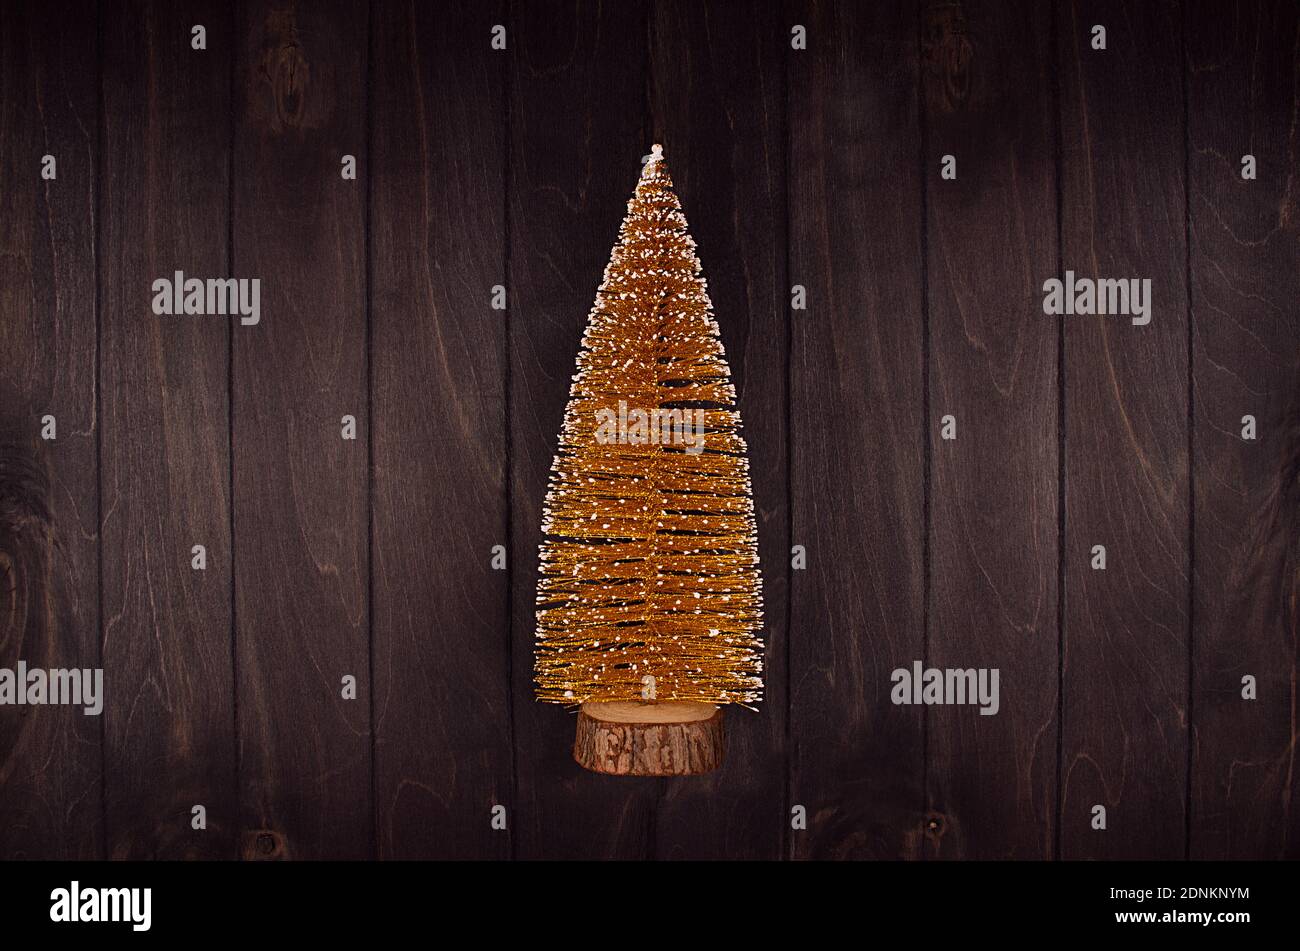 Goldener weihnachtsbaum mit Glitzer auf dunkelbrauner Planke, Draufsicht, Kopierraum. Stockfoto